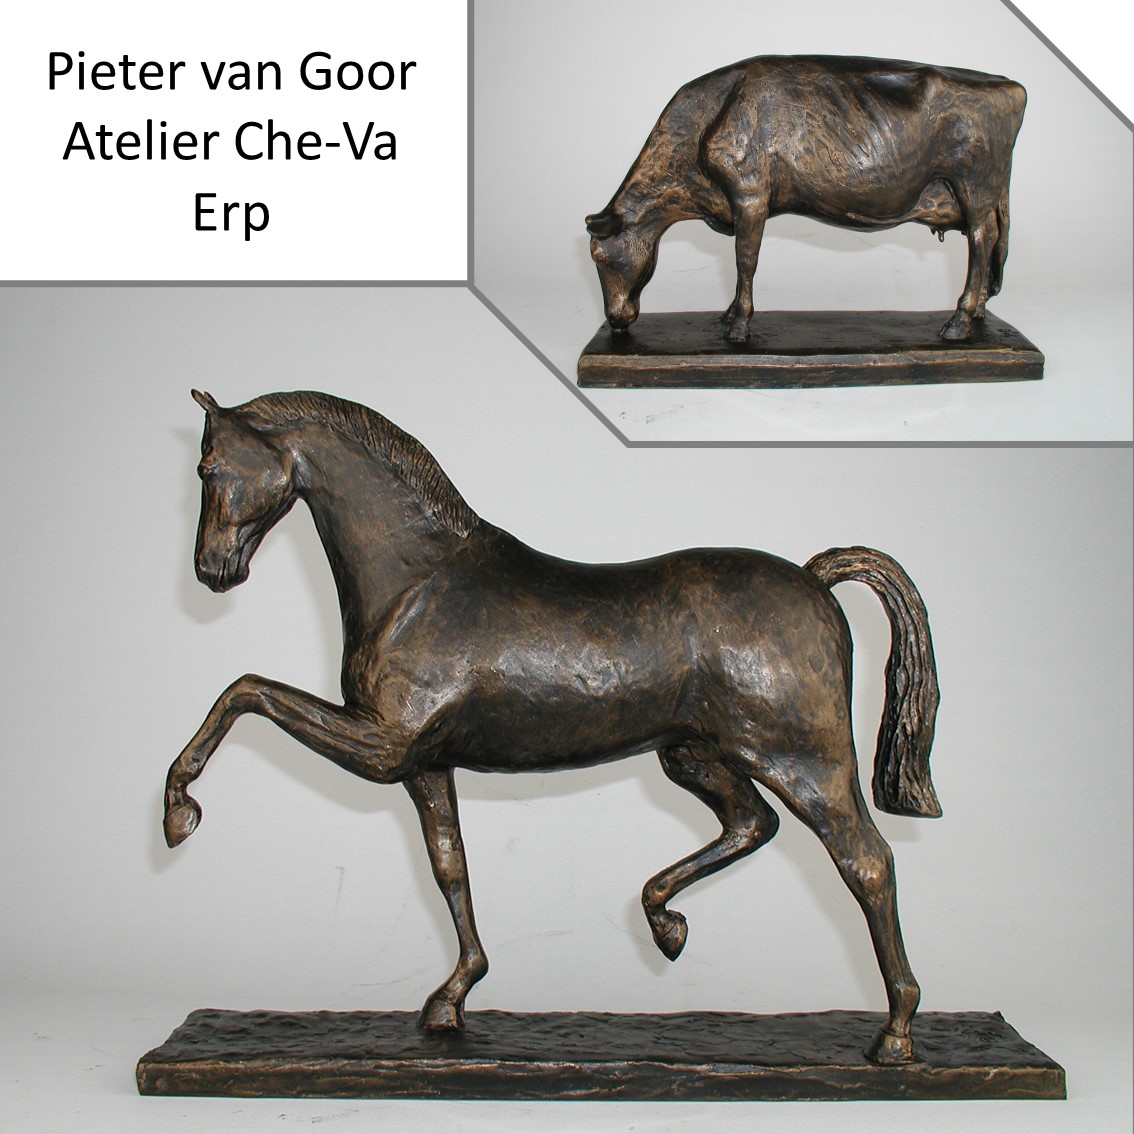 Pieter van Goor, Atelier Che-Va